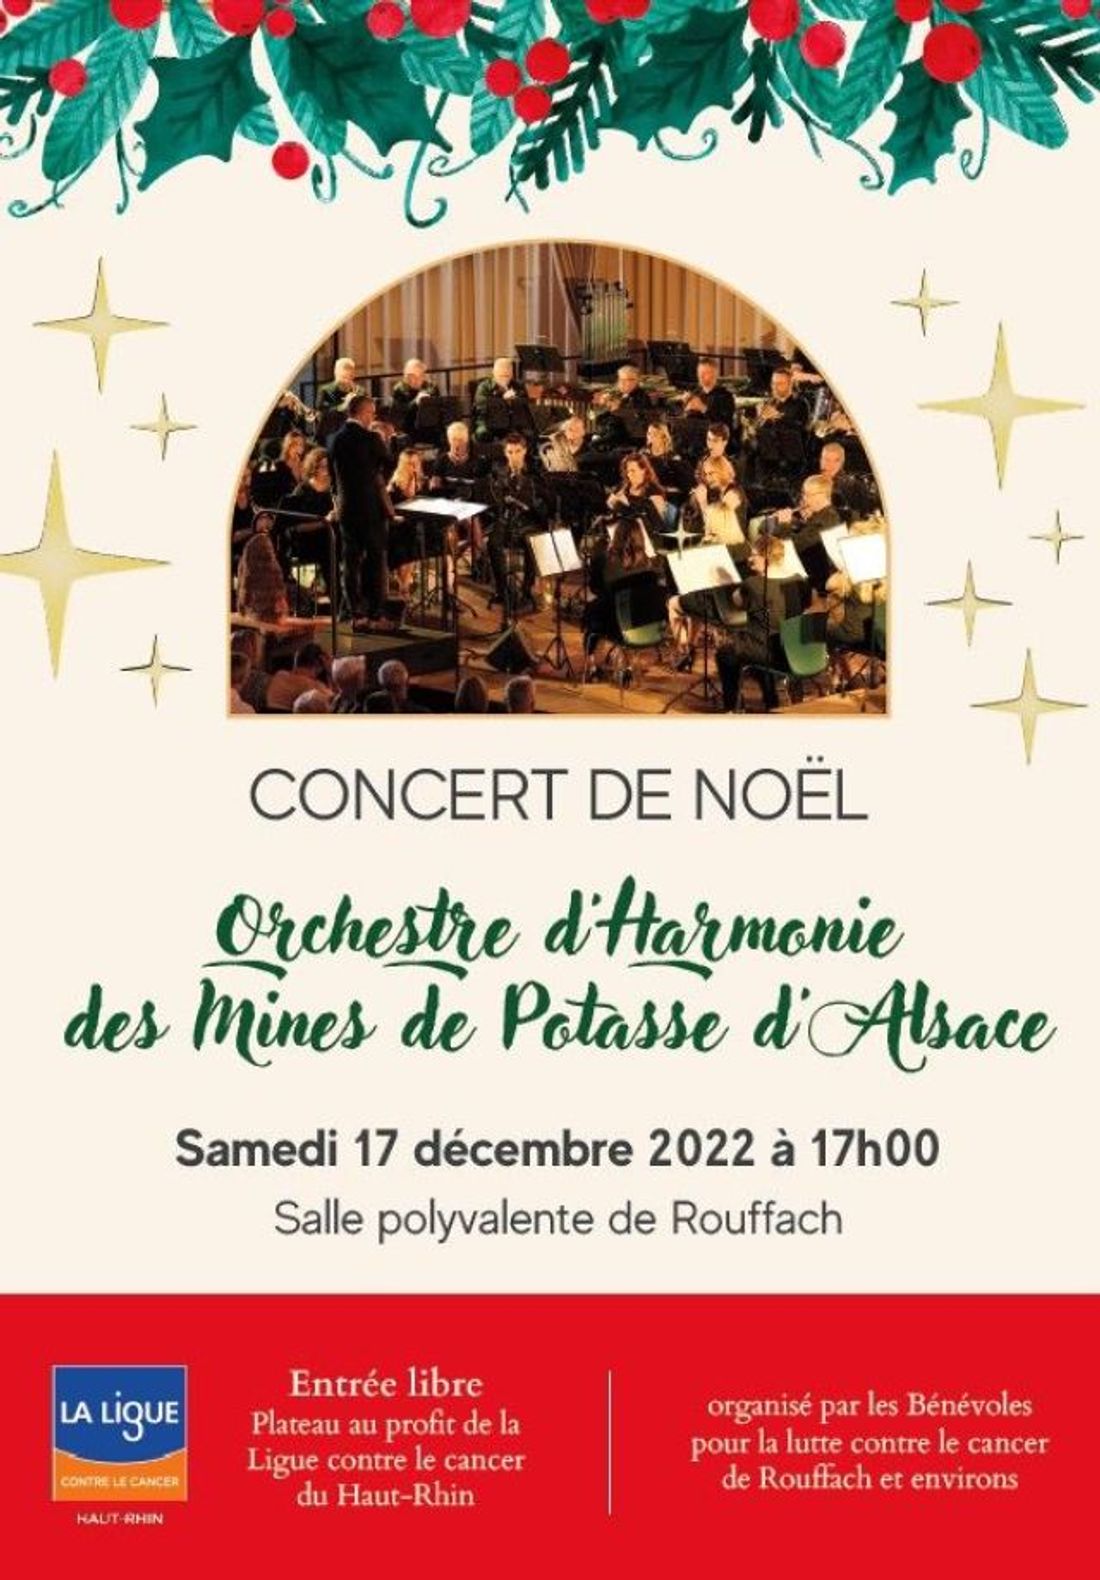 Concert de Noel Harmonie des Mines de potasse d'Alsace